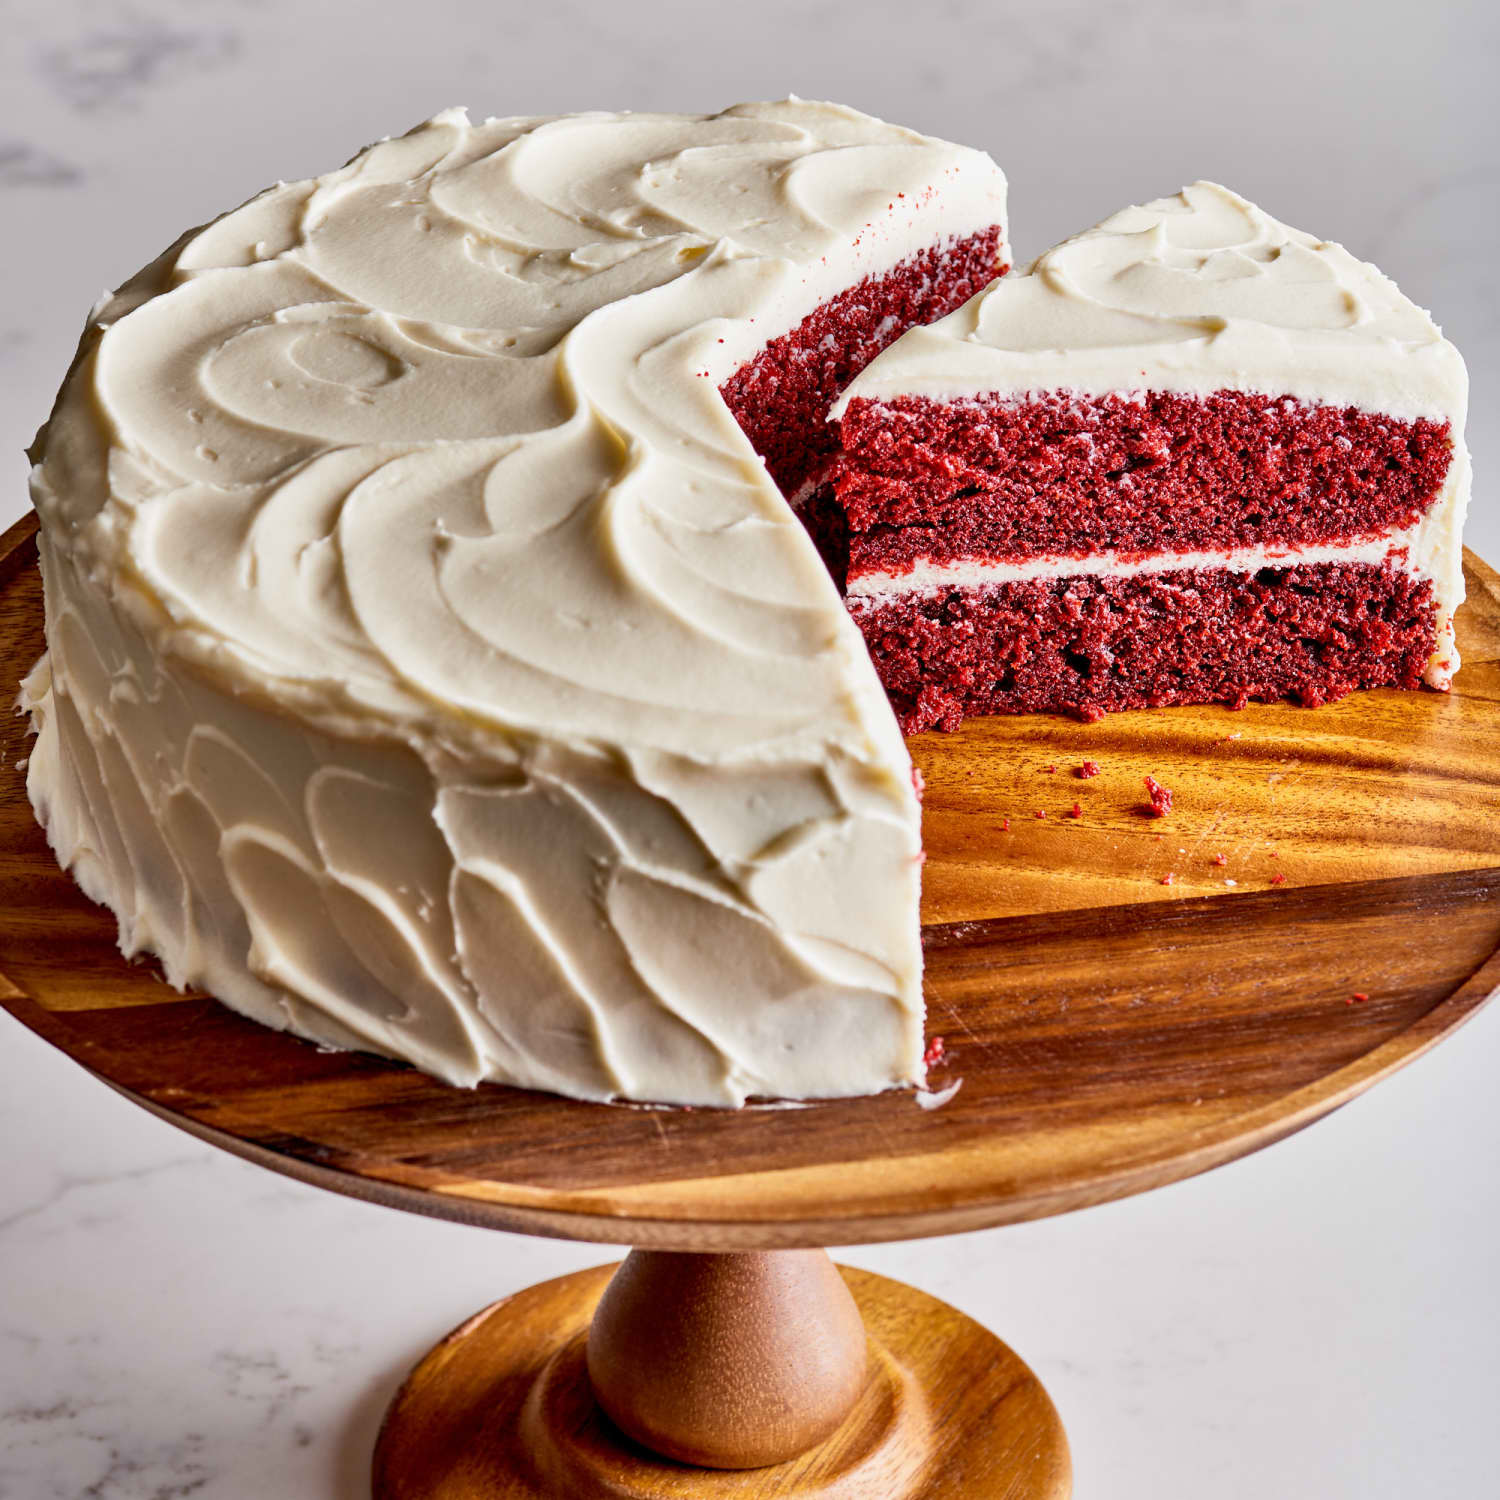 Tại sao bánh Red Velvet có màu đỏ? Đây là một câu hỏi thú vị về món bánh đầy quyến rũ này. Nếu bạn muốn tìm hiểu về nguyên nhân tạo ra màu sắc đặc trưng của bánh Red Velvet, hãy xem những hình ảnh liên quan đến câu trả lời cho câu hỏi này.